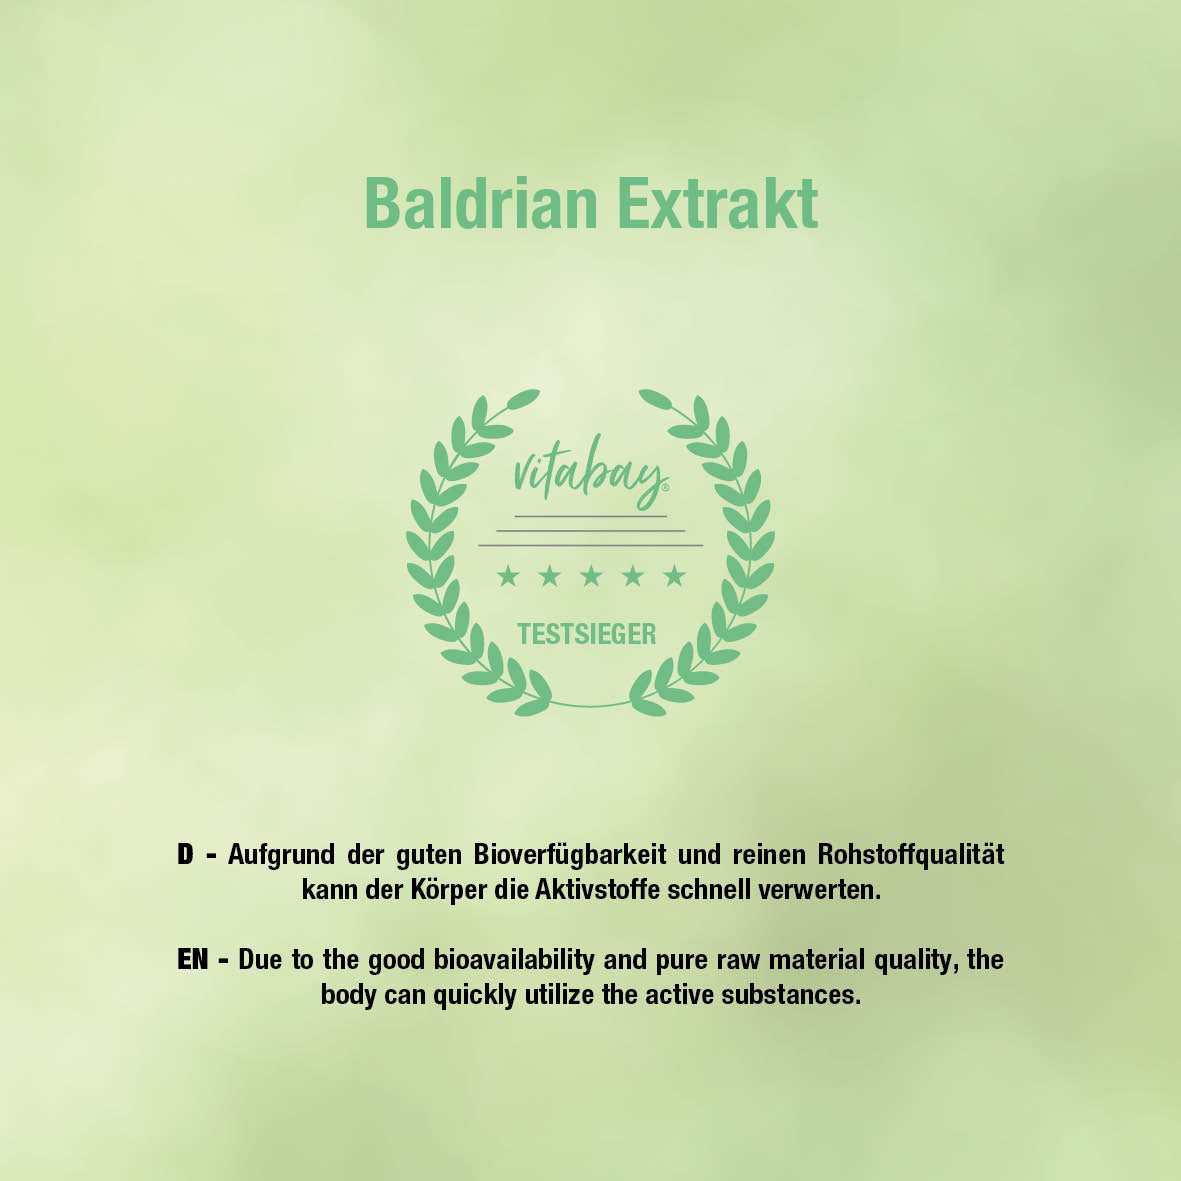 Baldrian Extrakt 2000 mg - 90 vegane Kapseln